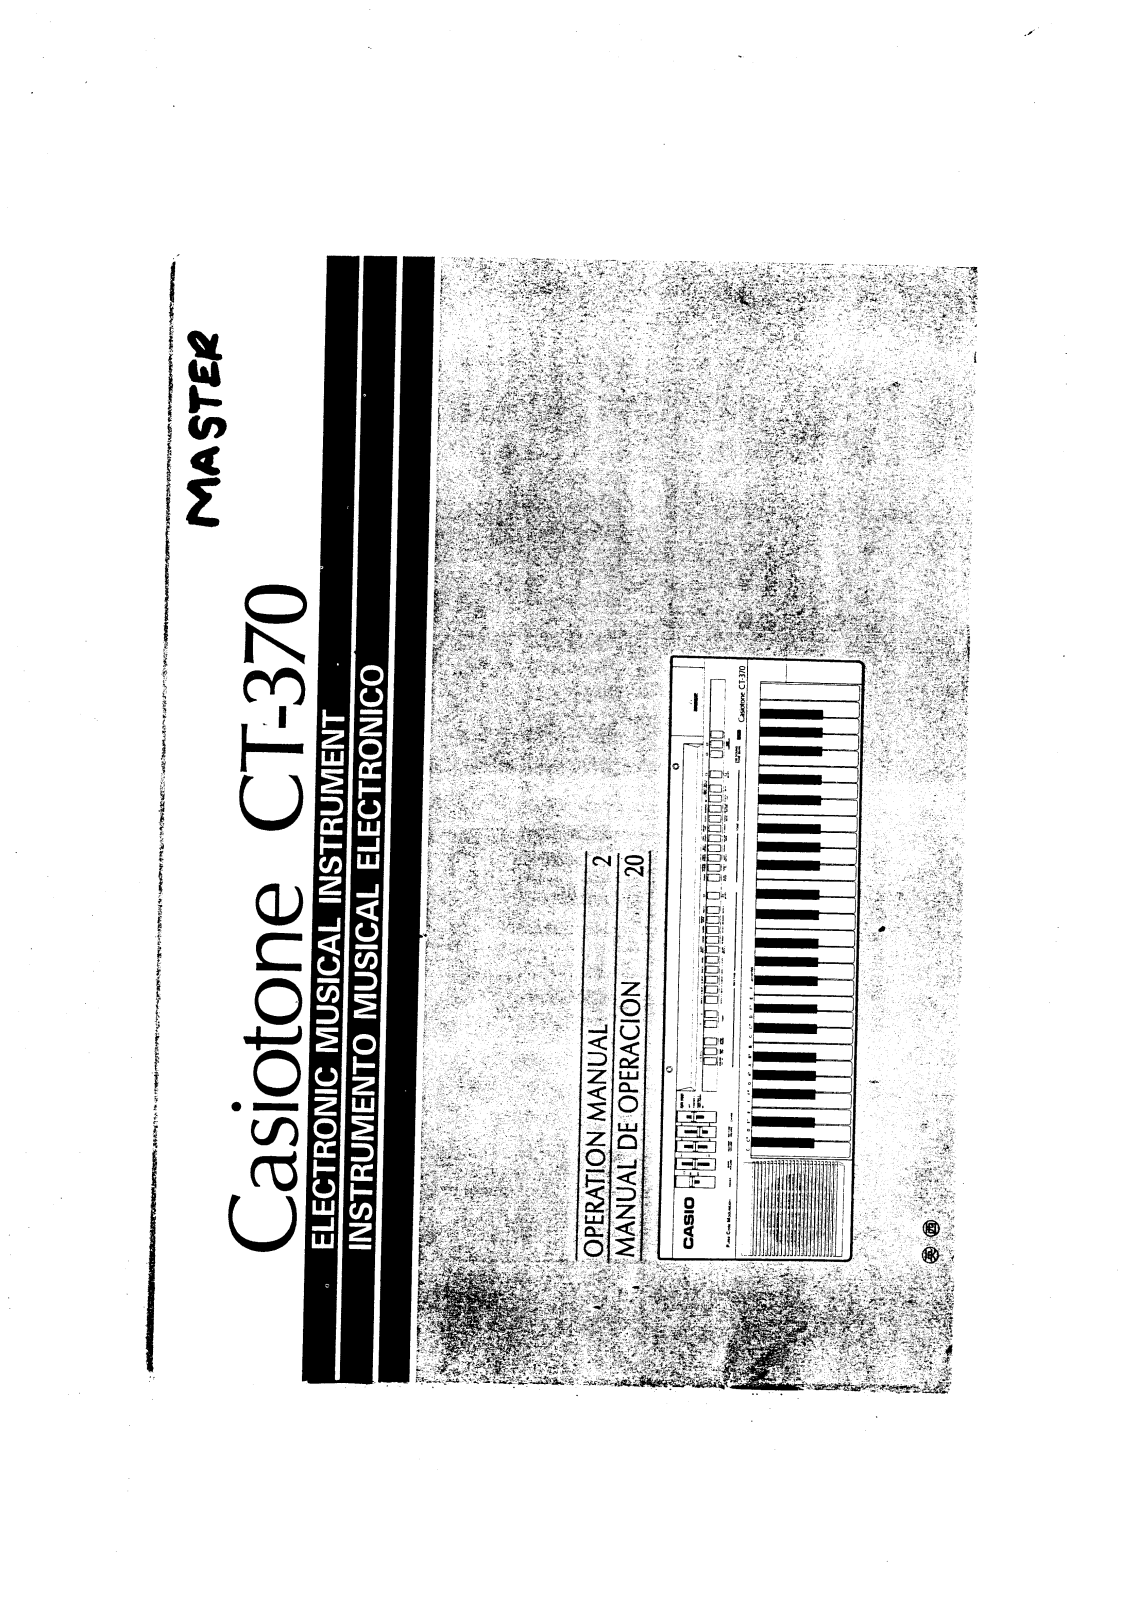 Casio CT-370 User Manual